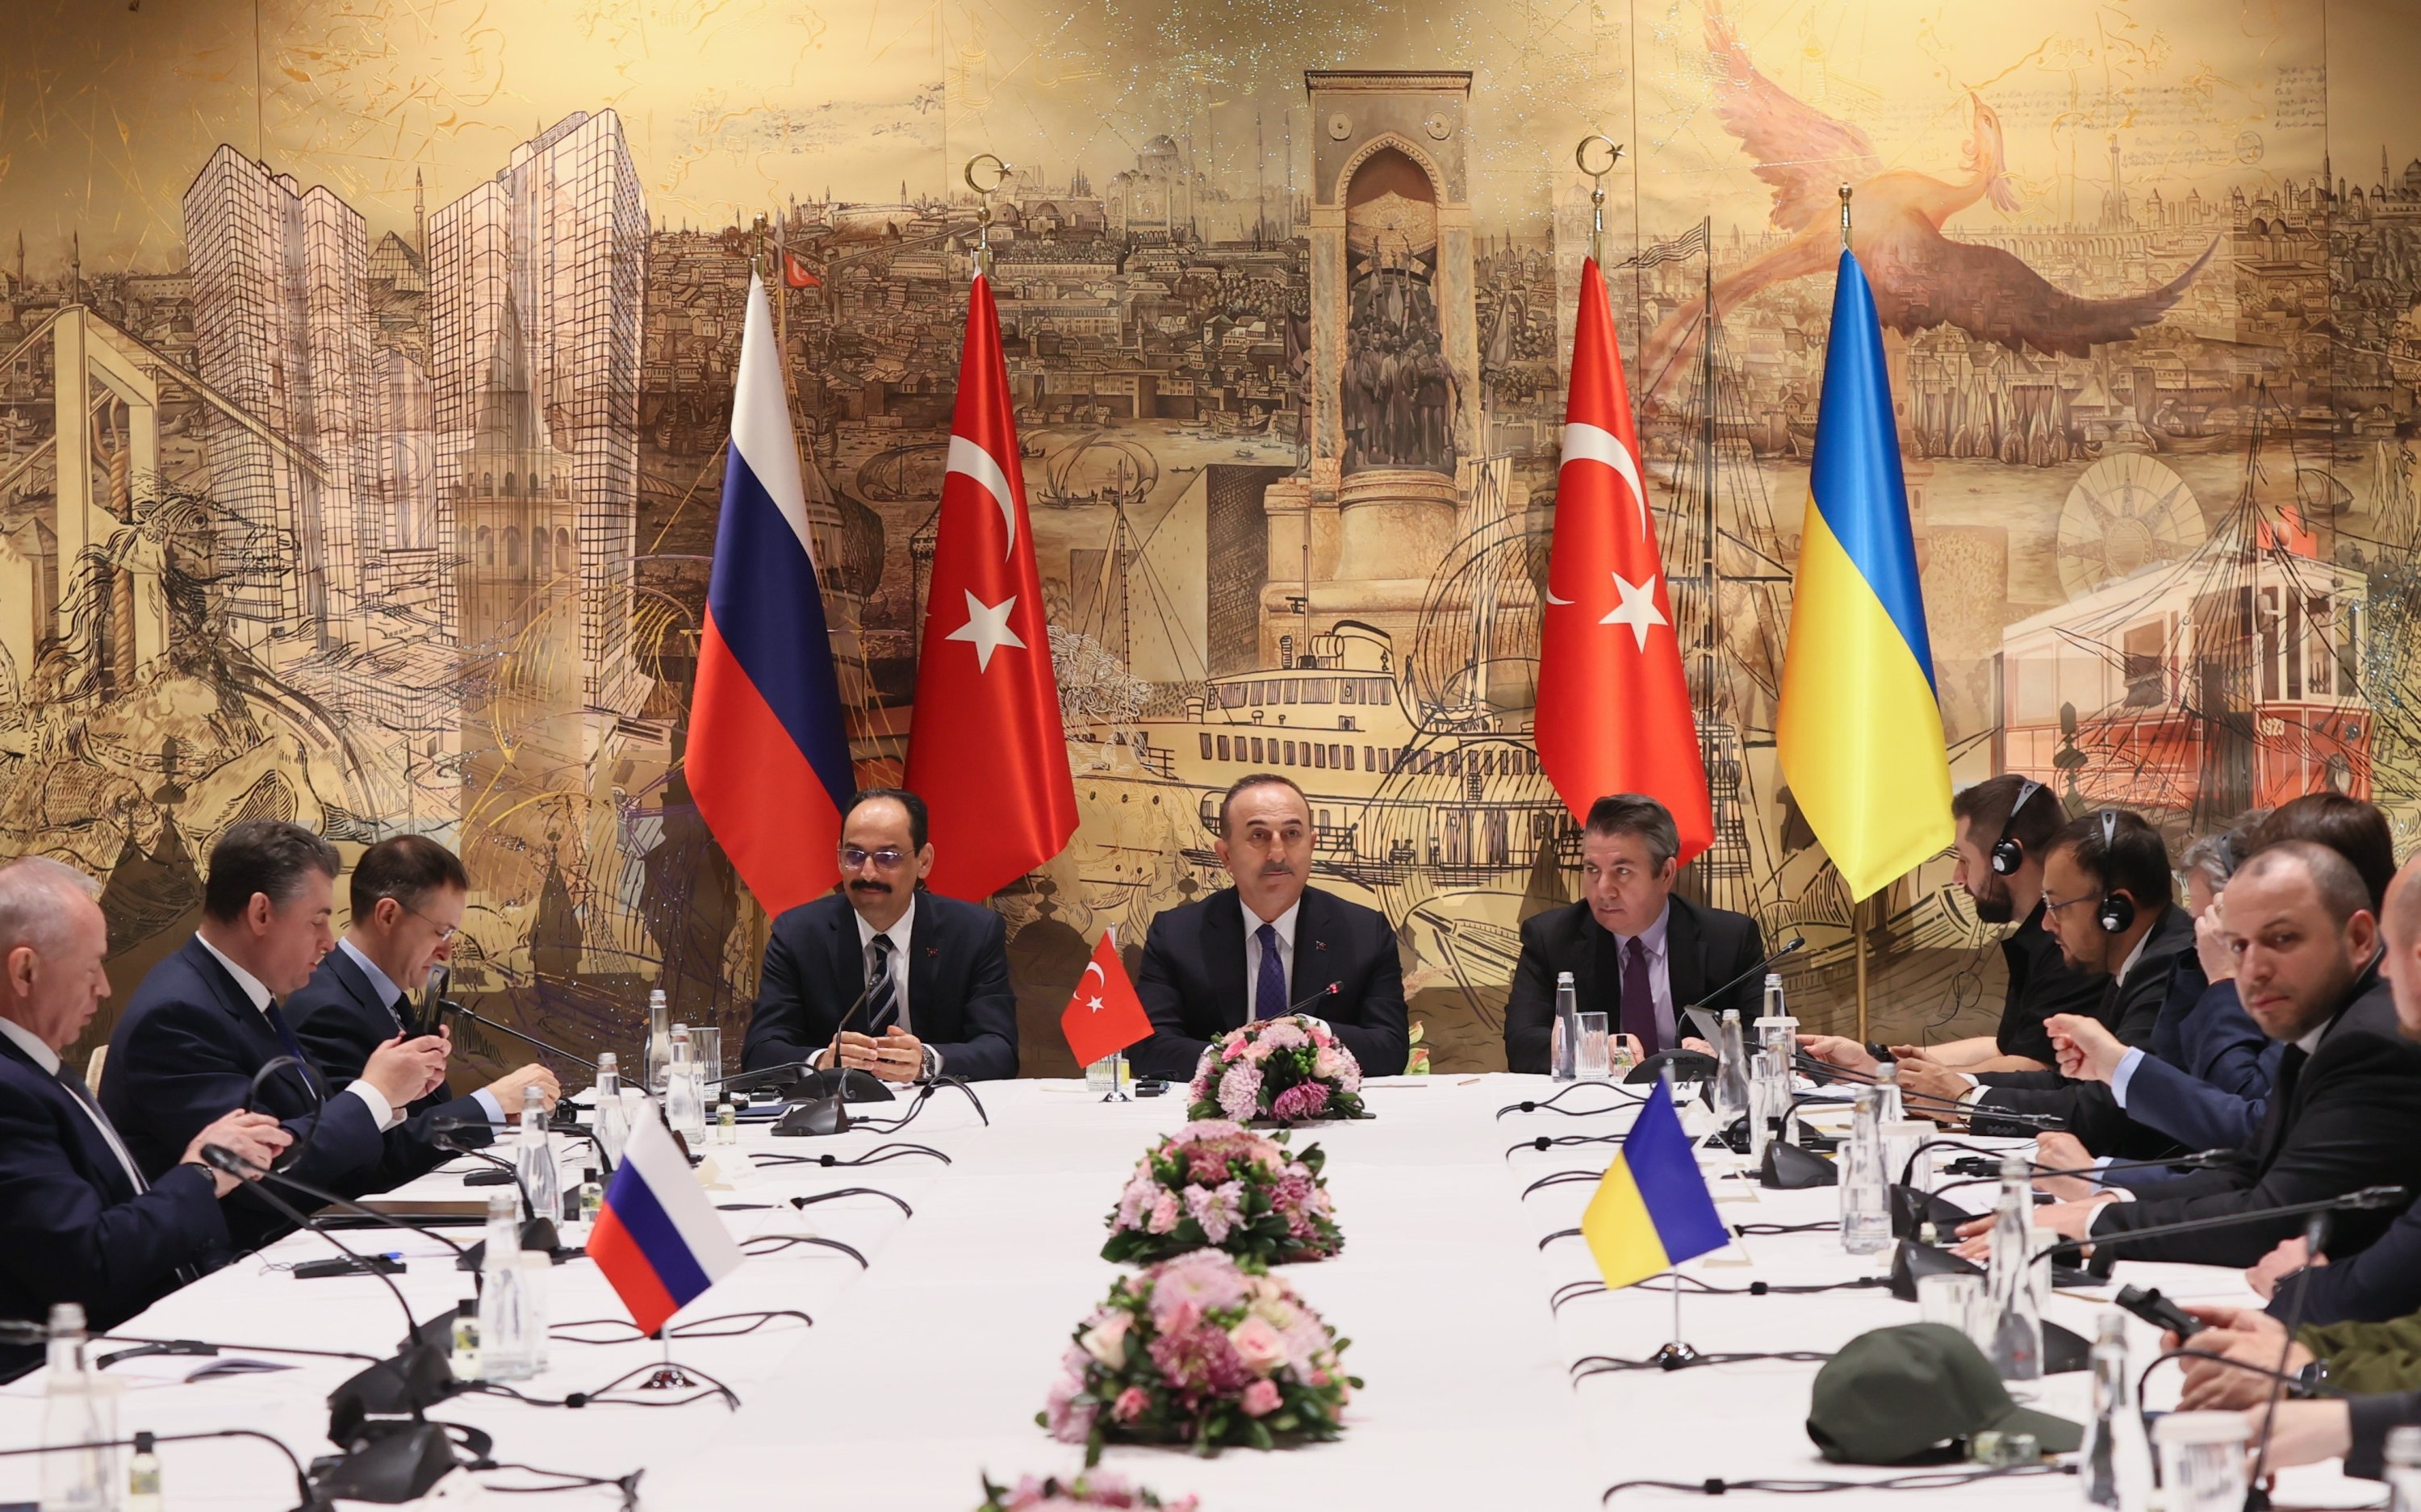 Переговоры на украинском. Переговоры России и Украины в Турции 2022. Переговоры в Стамбуле. Российско-украинские переговоры в Стамбуле. Международные переговоры.